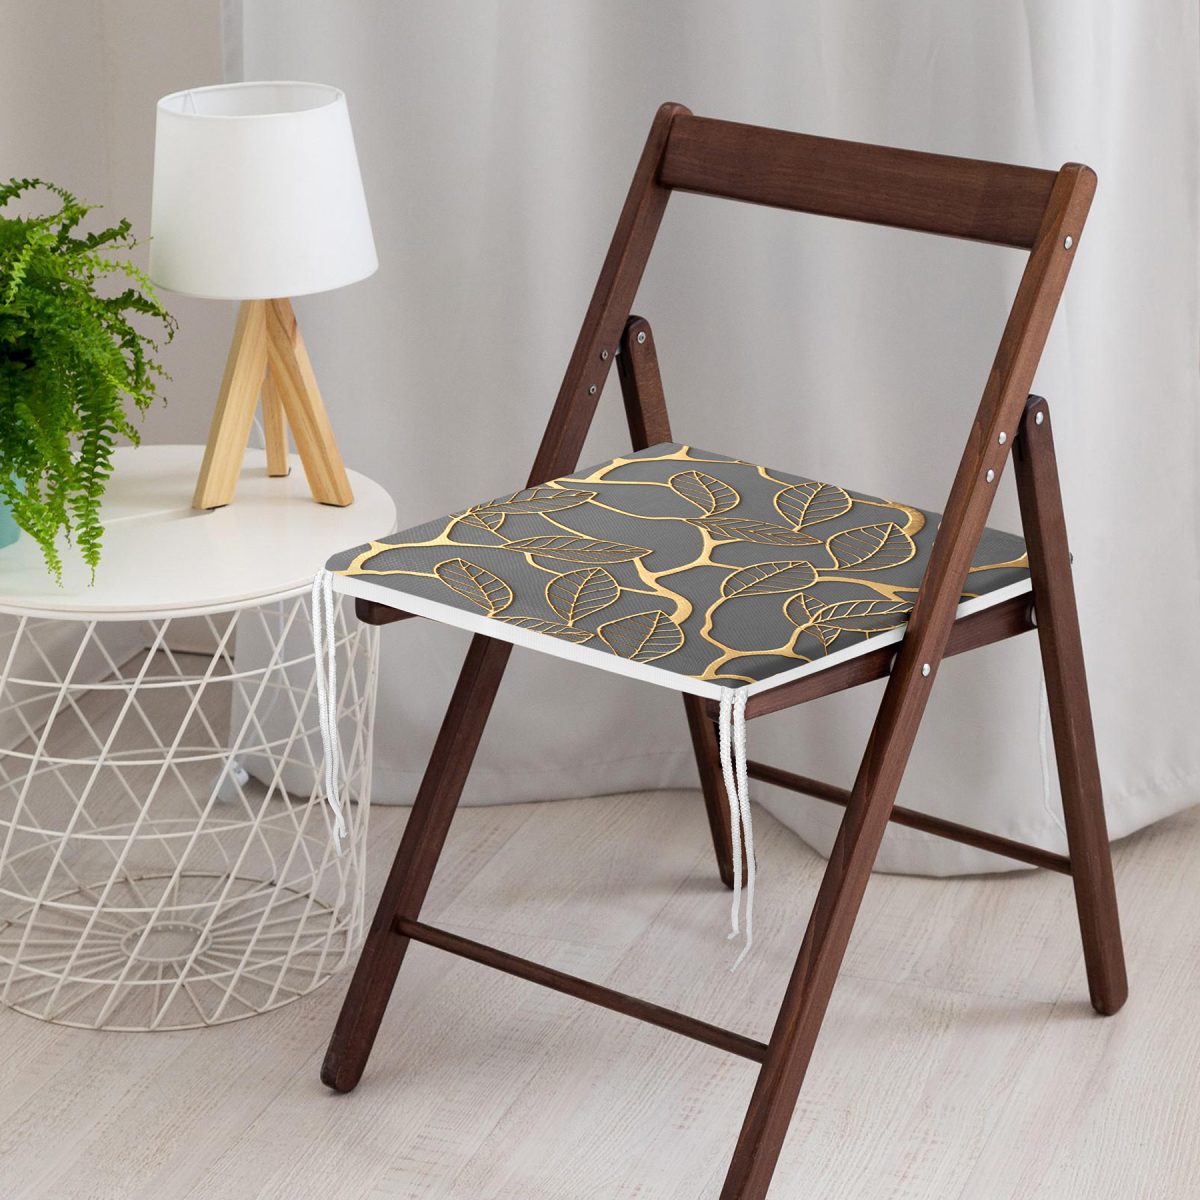 Gold Detaylı Yaprak Motifli Özel Tasarım Fermuarlı Sandalye Minderi Realhomes